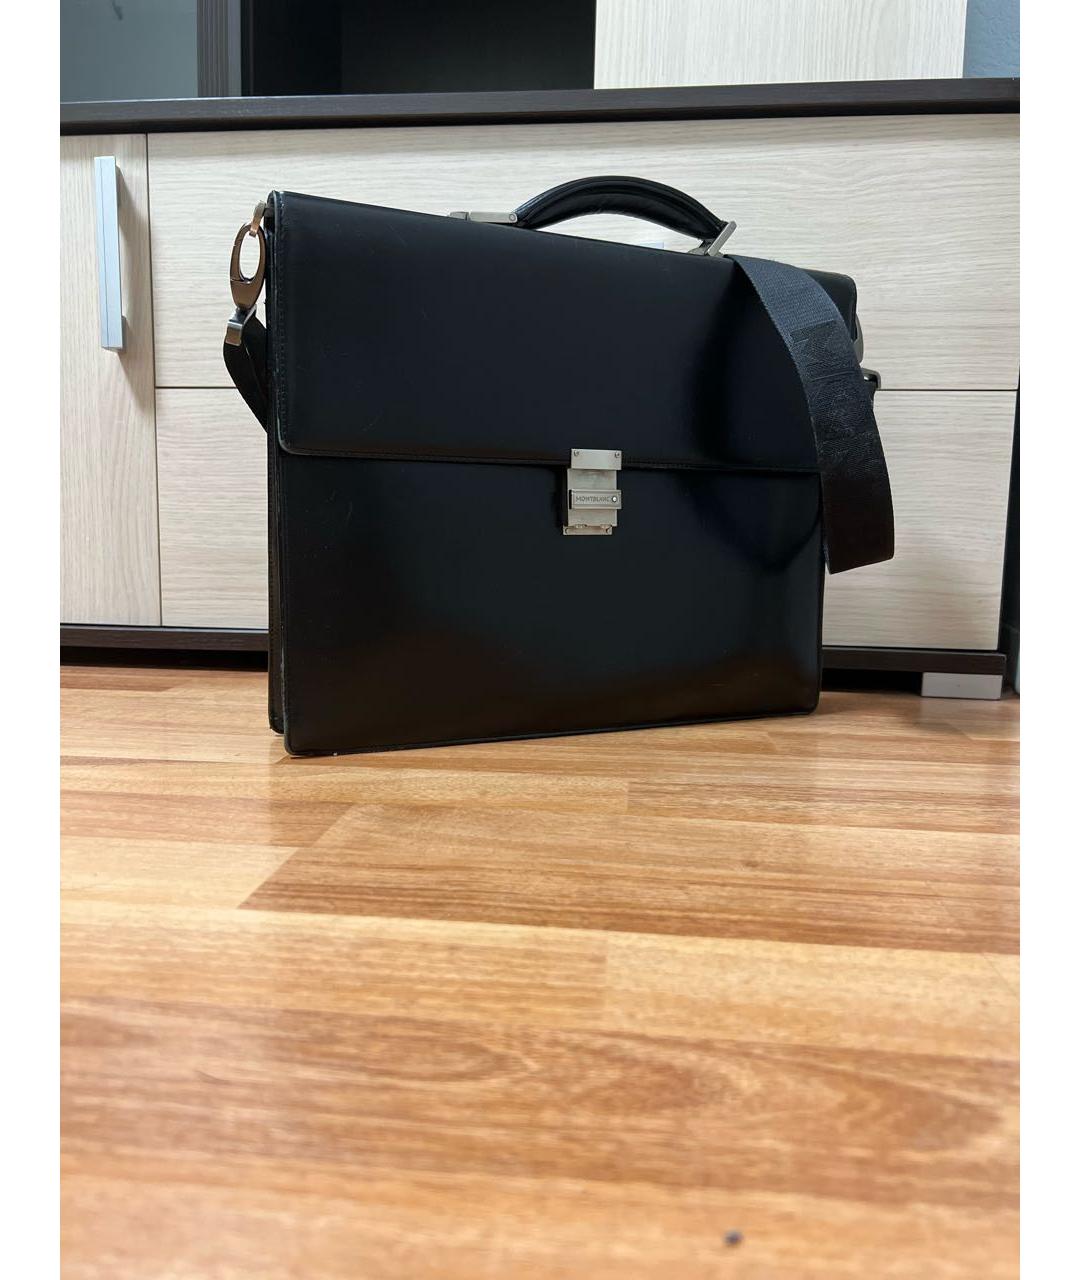 MONTBLANC Черный кожаный портфель, фото 2